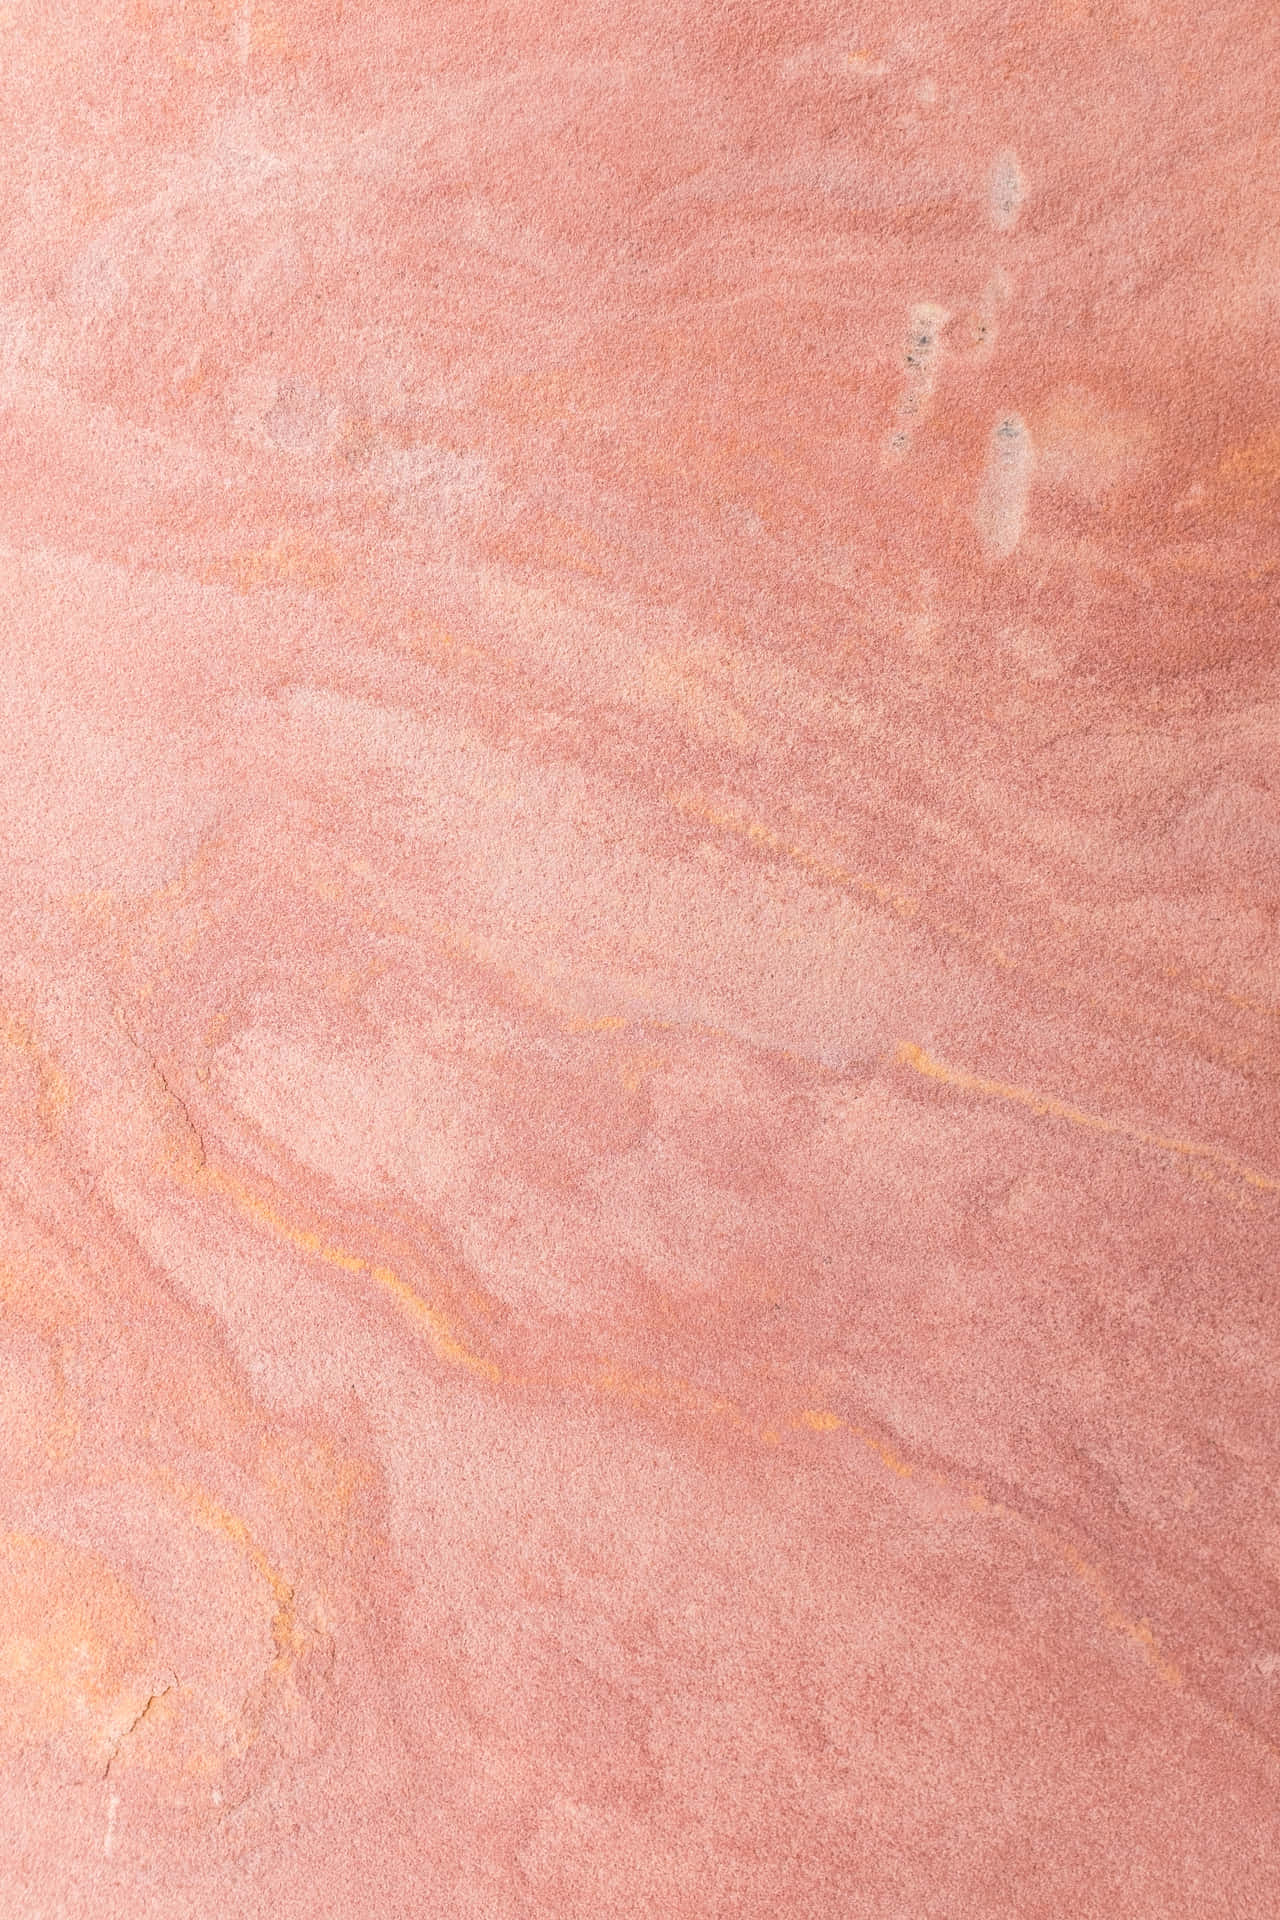 Glitrende pink og guld Wallpaper